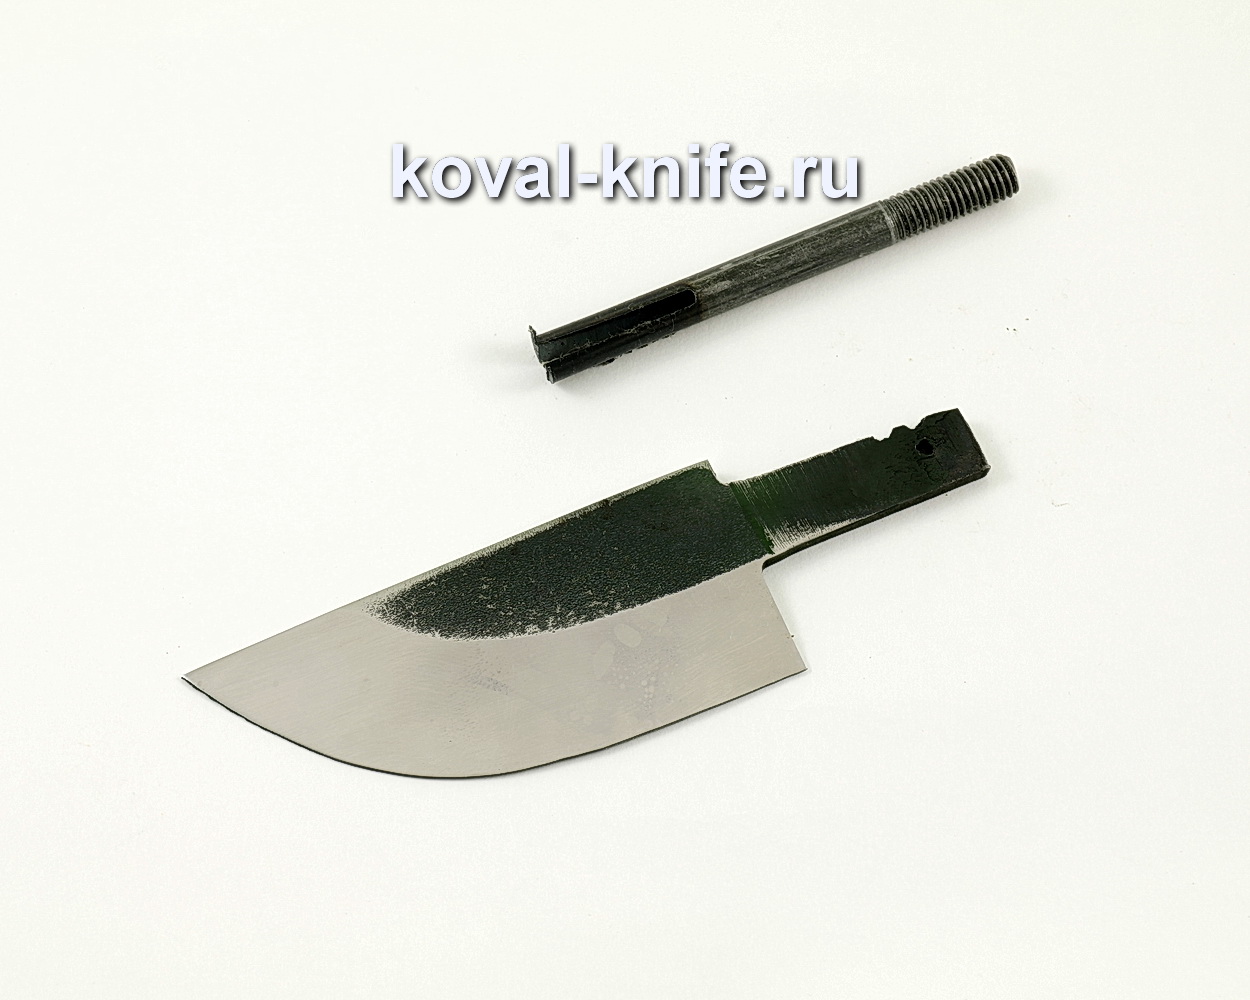 Клинок для ножа Скин (кованая сталь 110Х18)